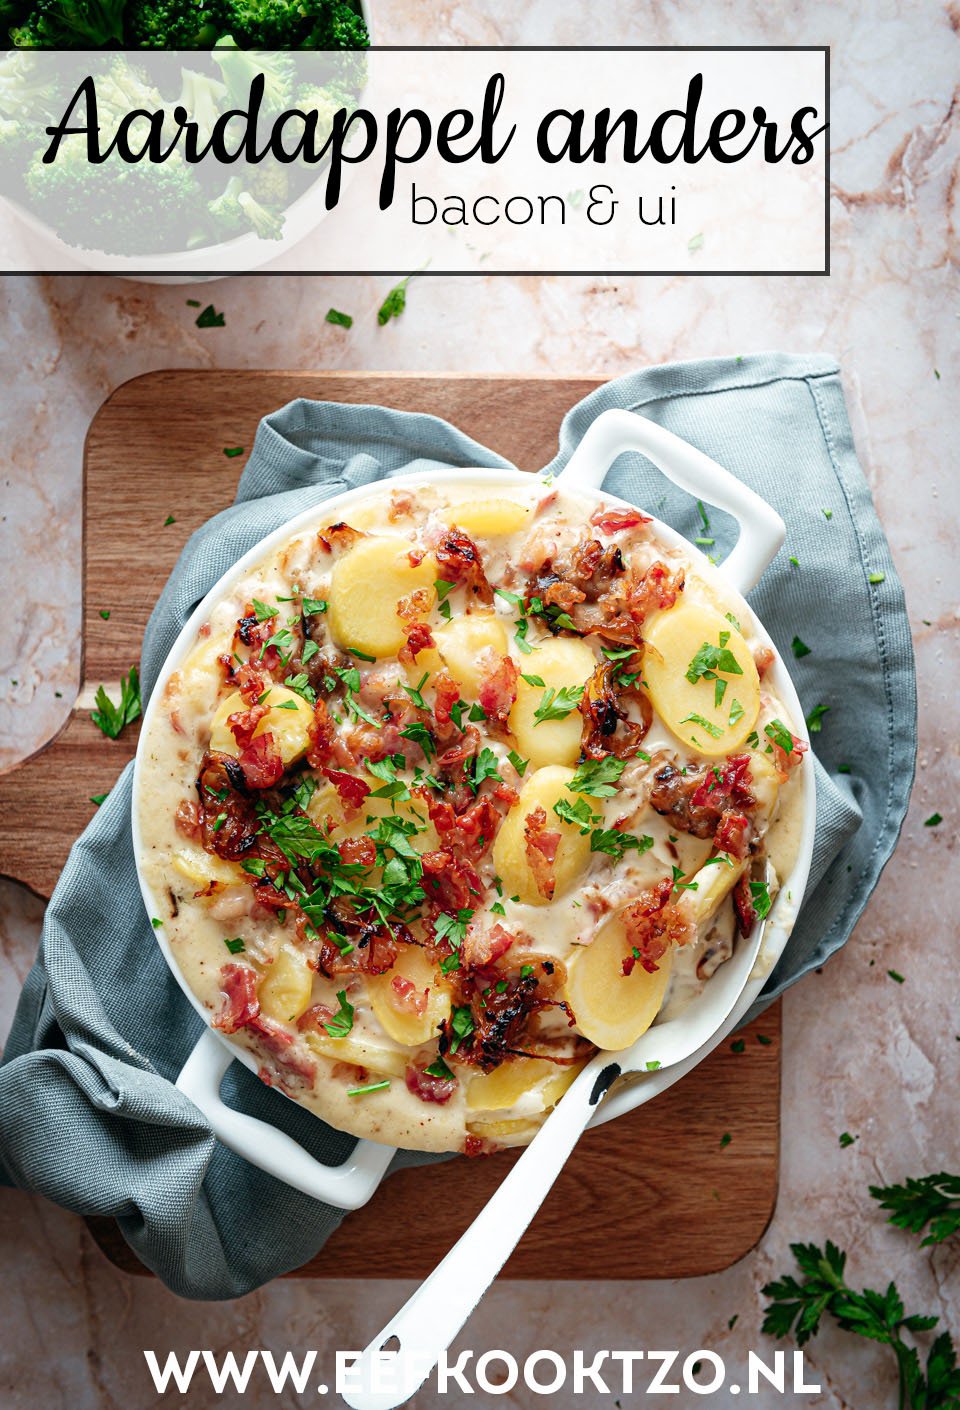 Ovenschotel met aardappel anders Pinterest Collage